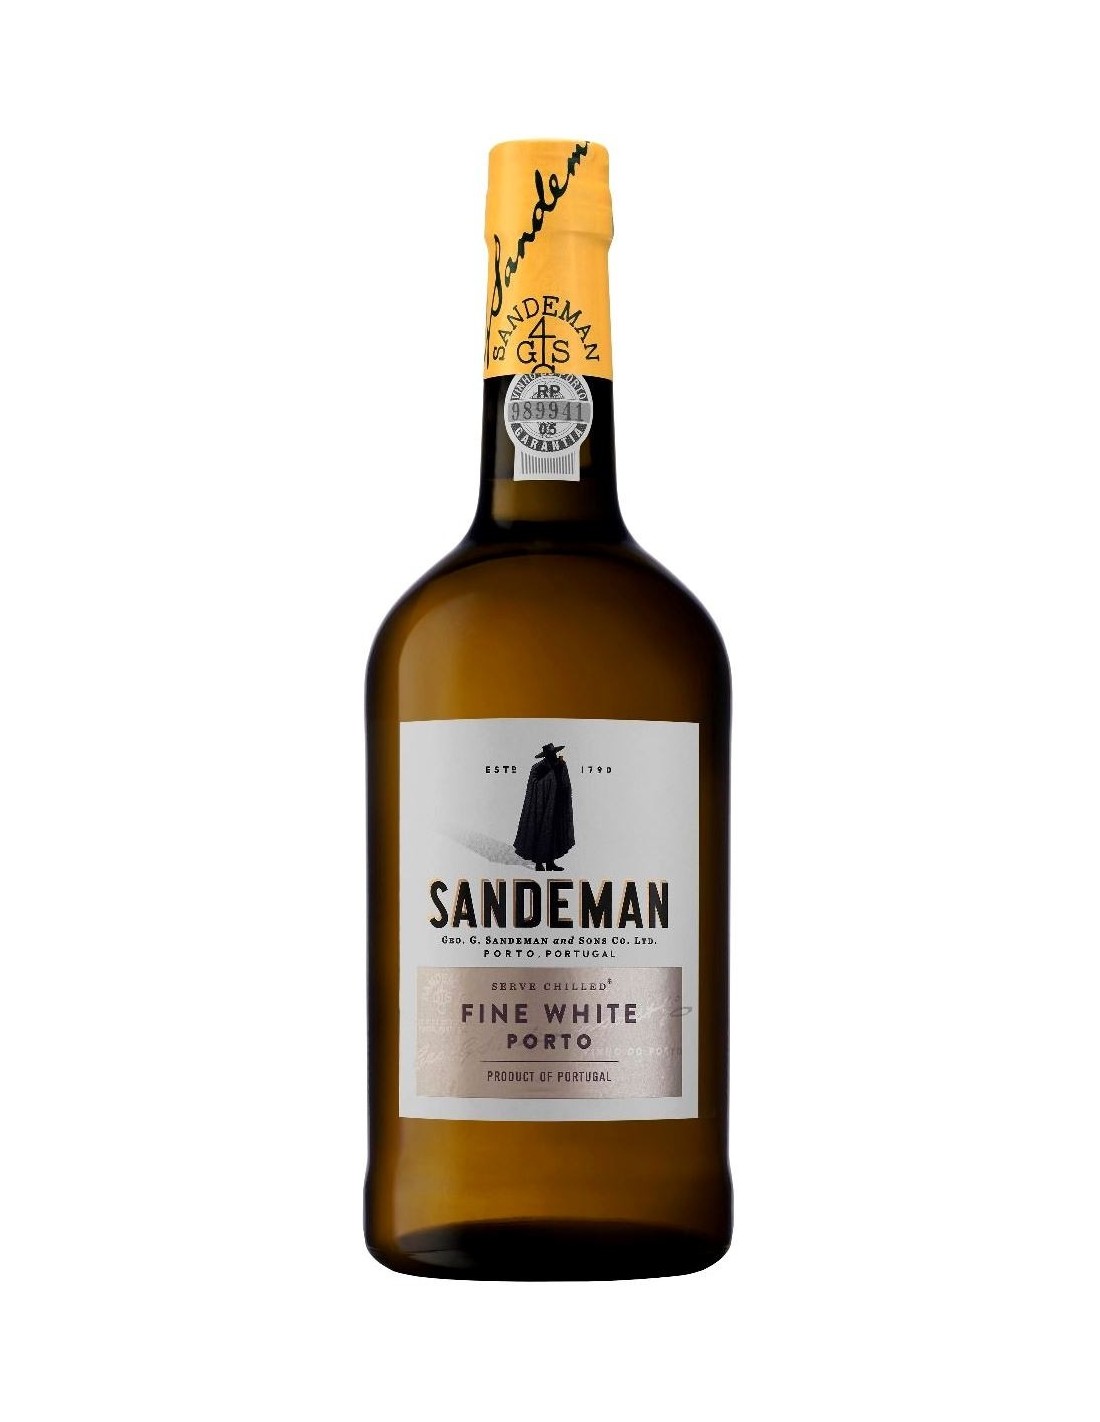 Vin porto alb dulce Sandeman White, 0.75L, 19.5% alc., Portugalia alcooldiscount.ro